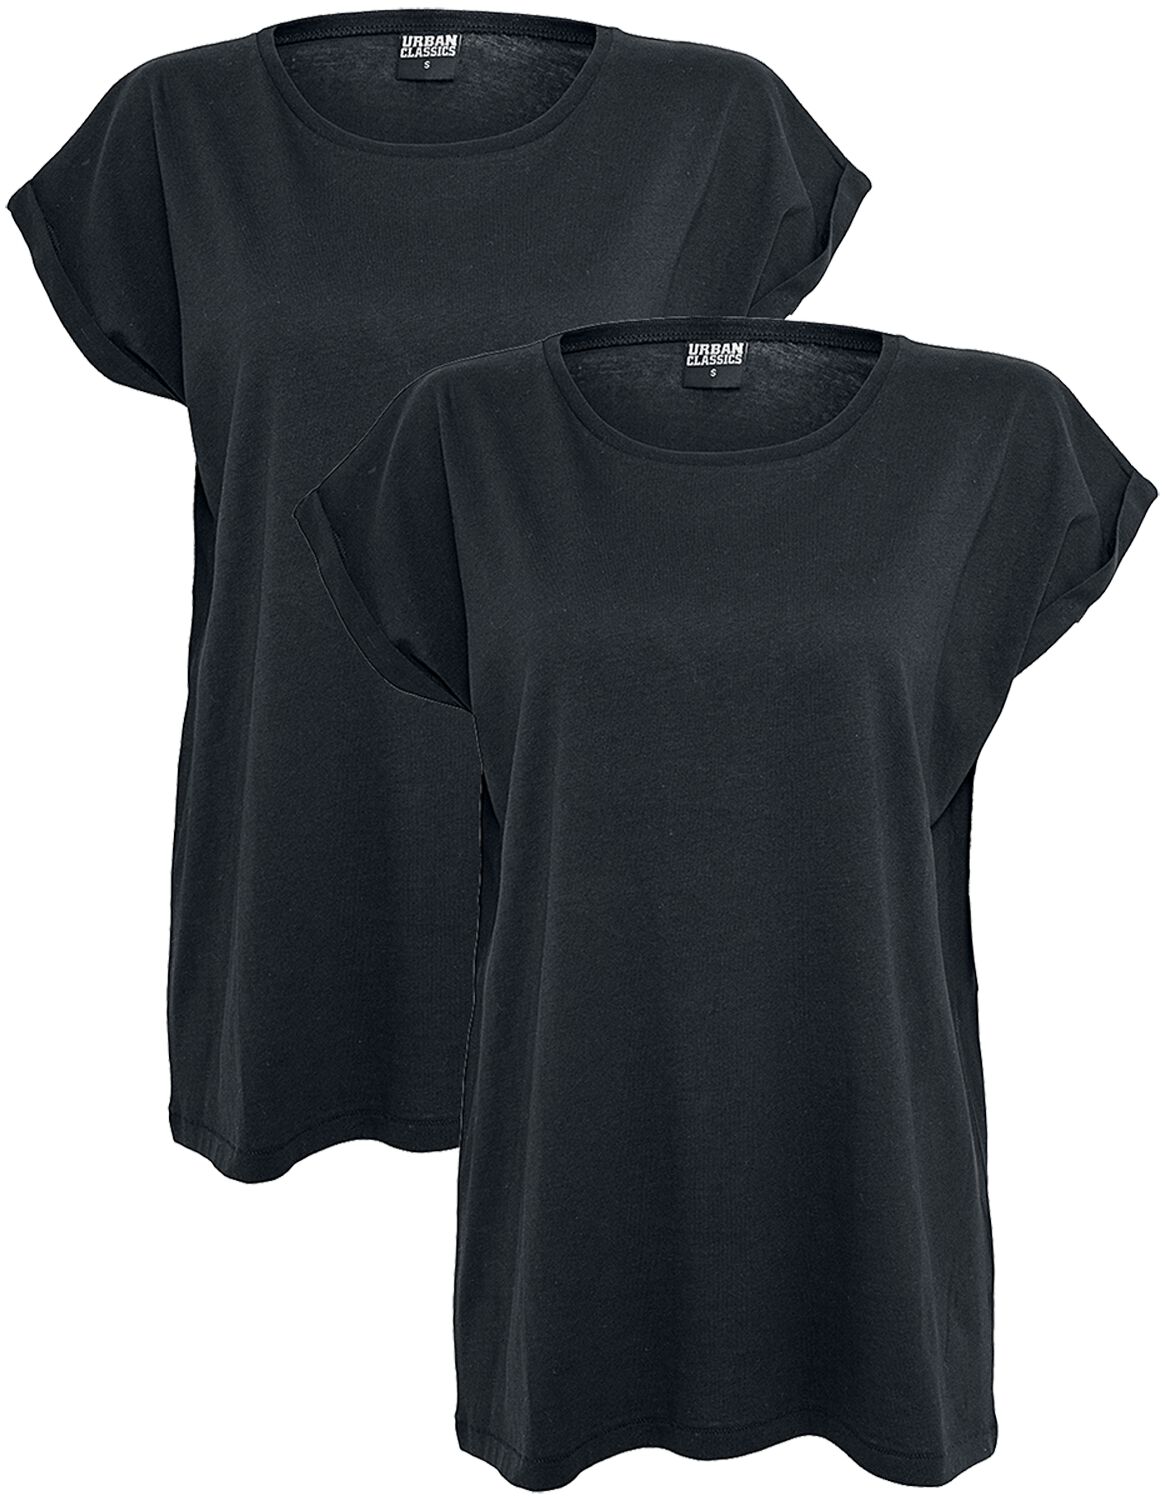 Urban Classics T-Shirt - Ladies Extended Shoulder Tee 2 Pack - XS bis 5XL - für Damen - Größe 5XL - schwarz